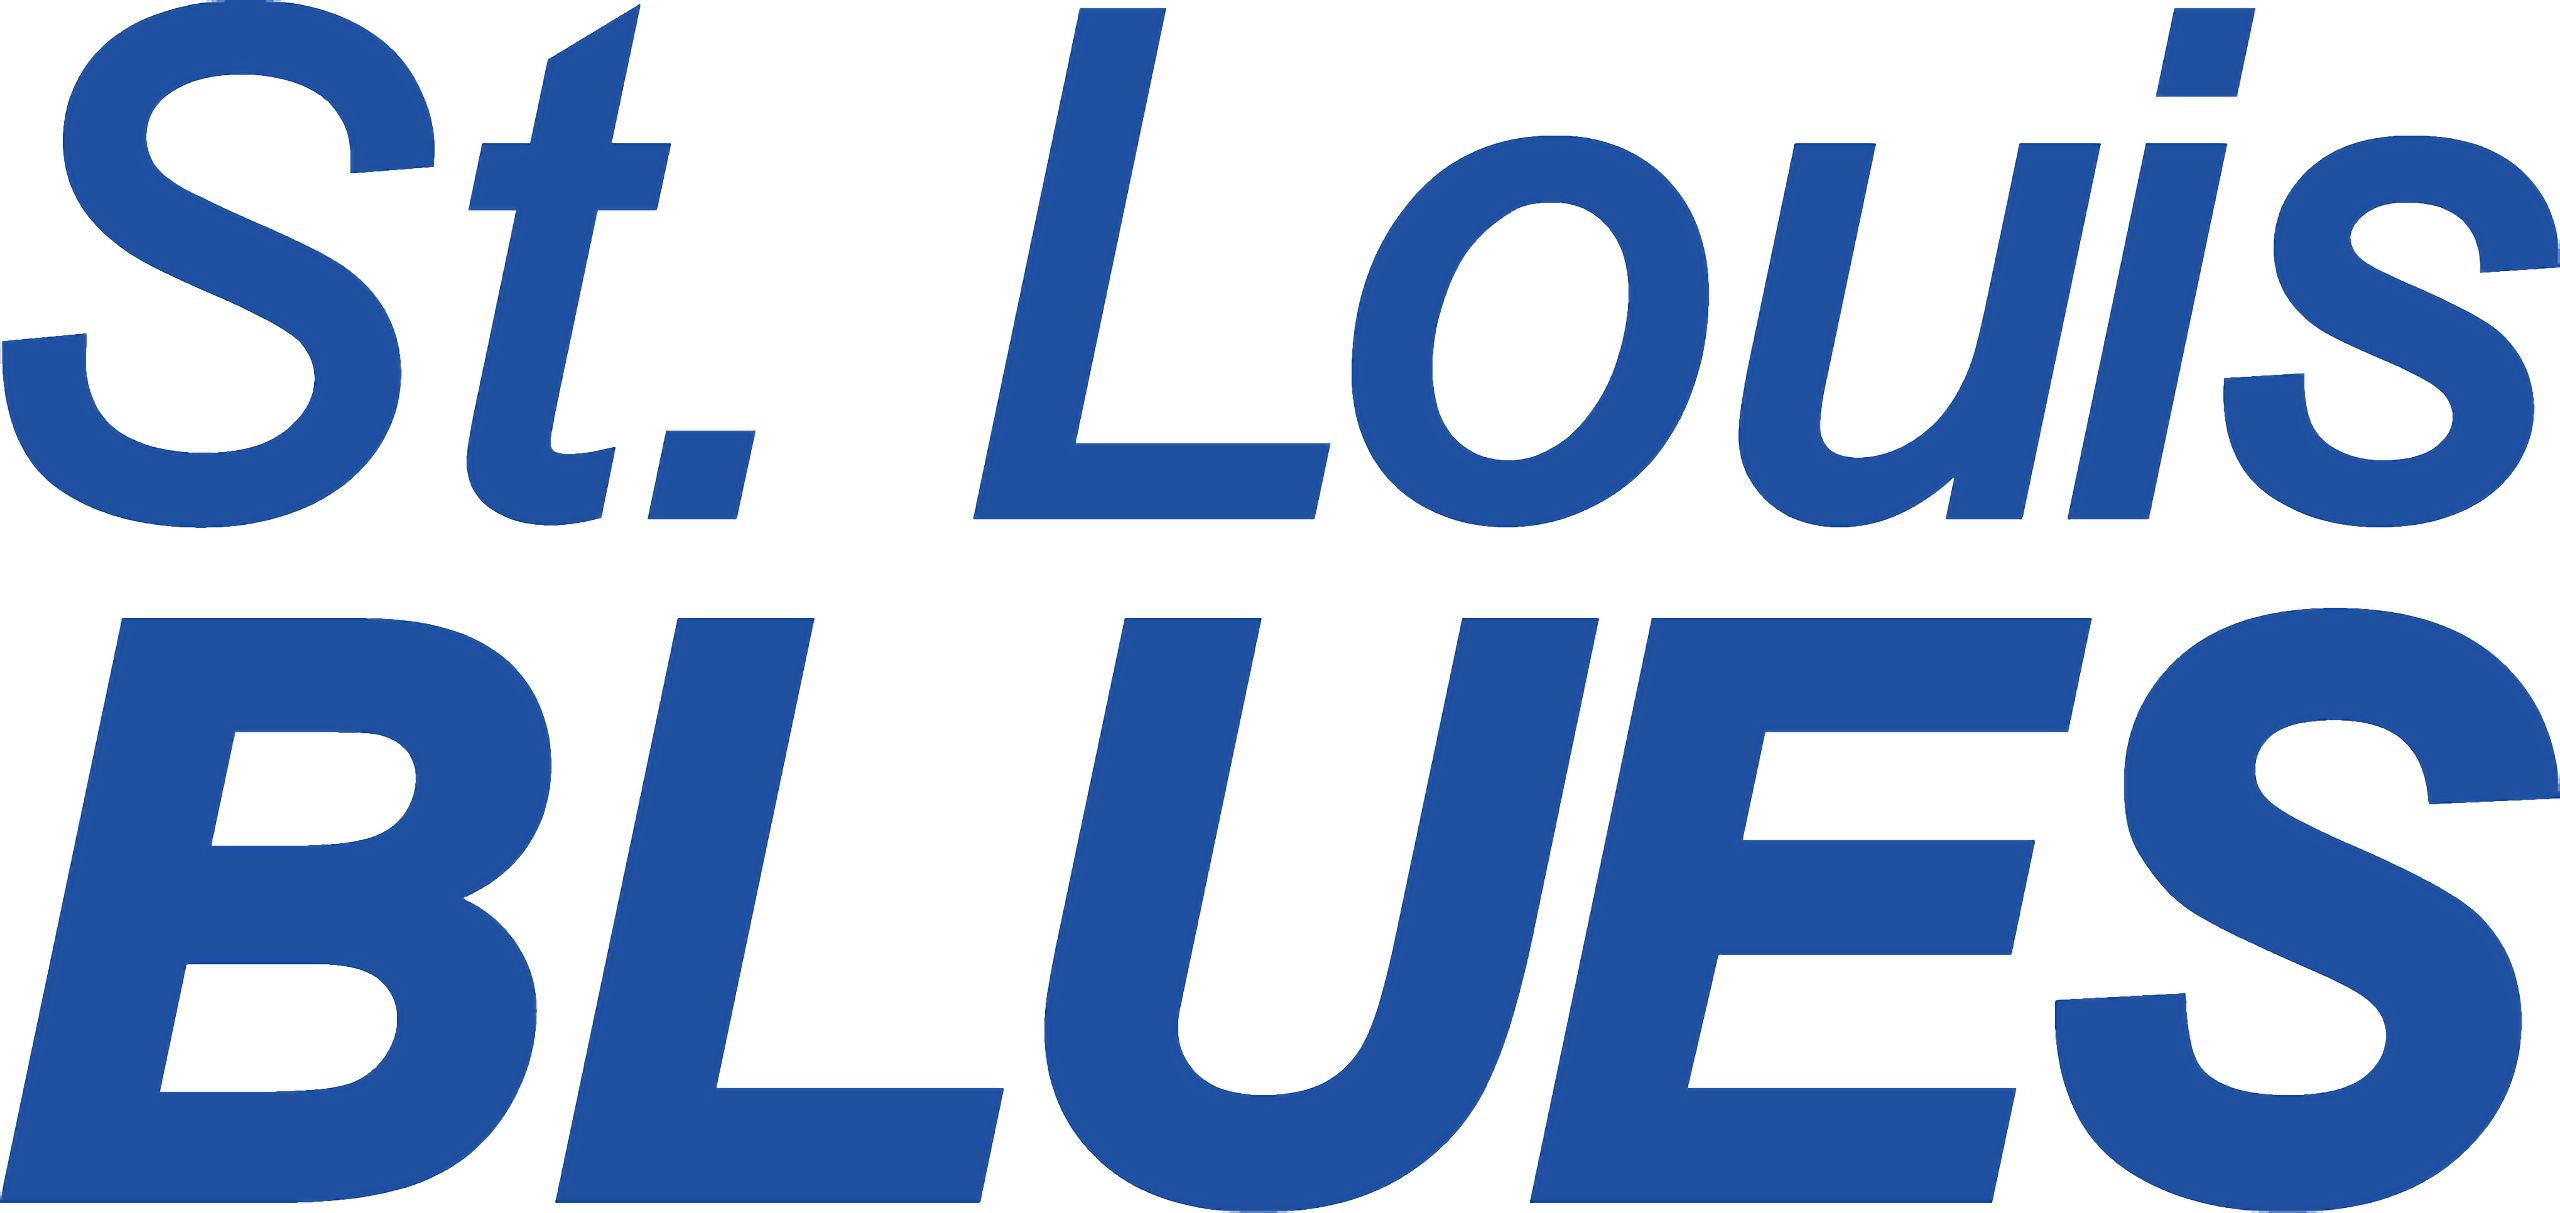 St. Louis Blues Wallpaper, Free Download